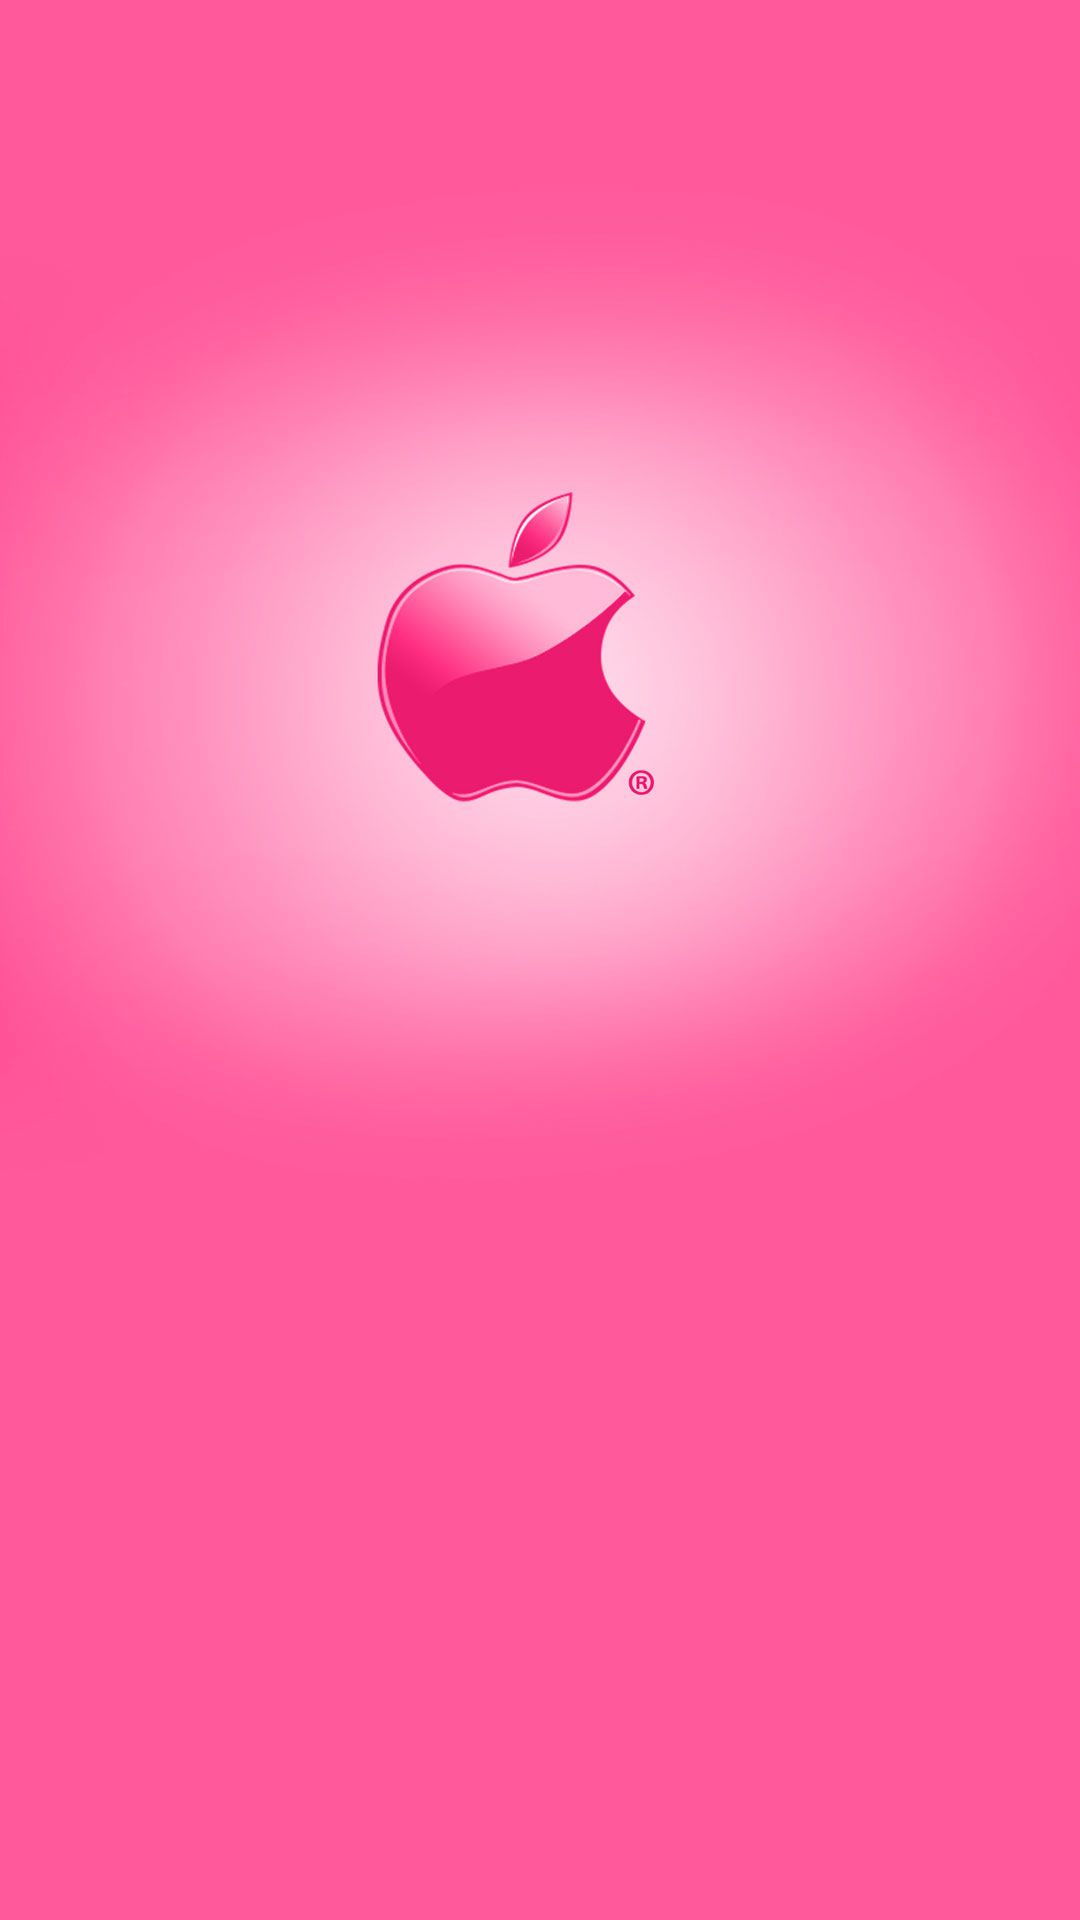 1080x1920 Finaciones de fondo de pantalla: In The Pink - Pink iPhone  Wallpaper de Colores, Rosa caliente - Todo fondos